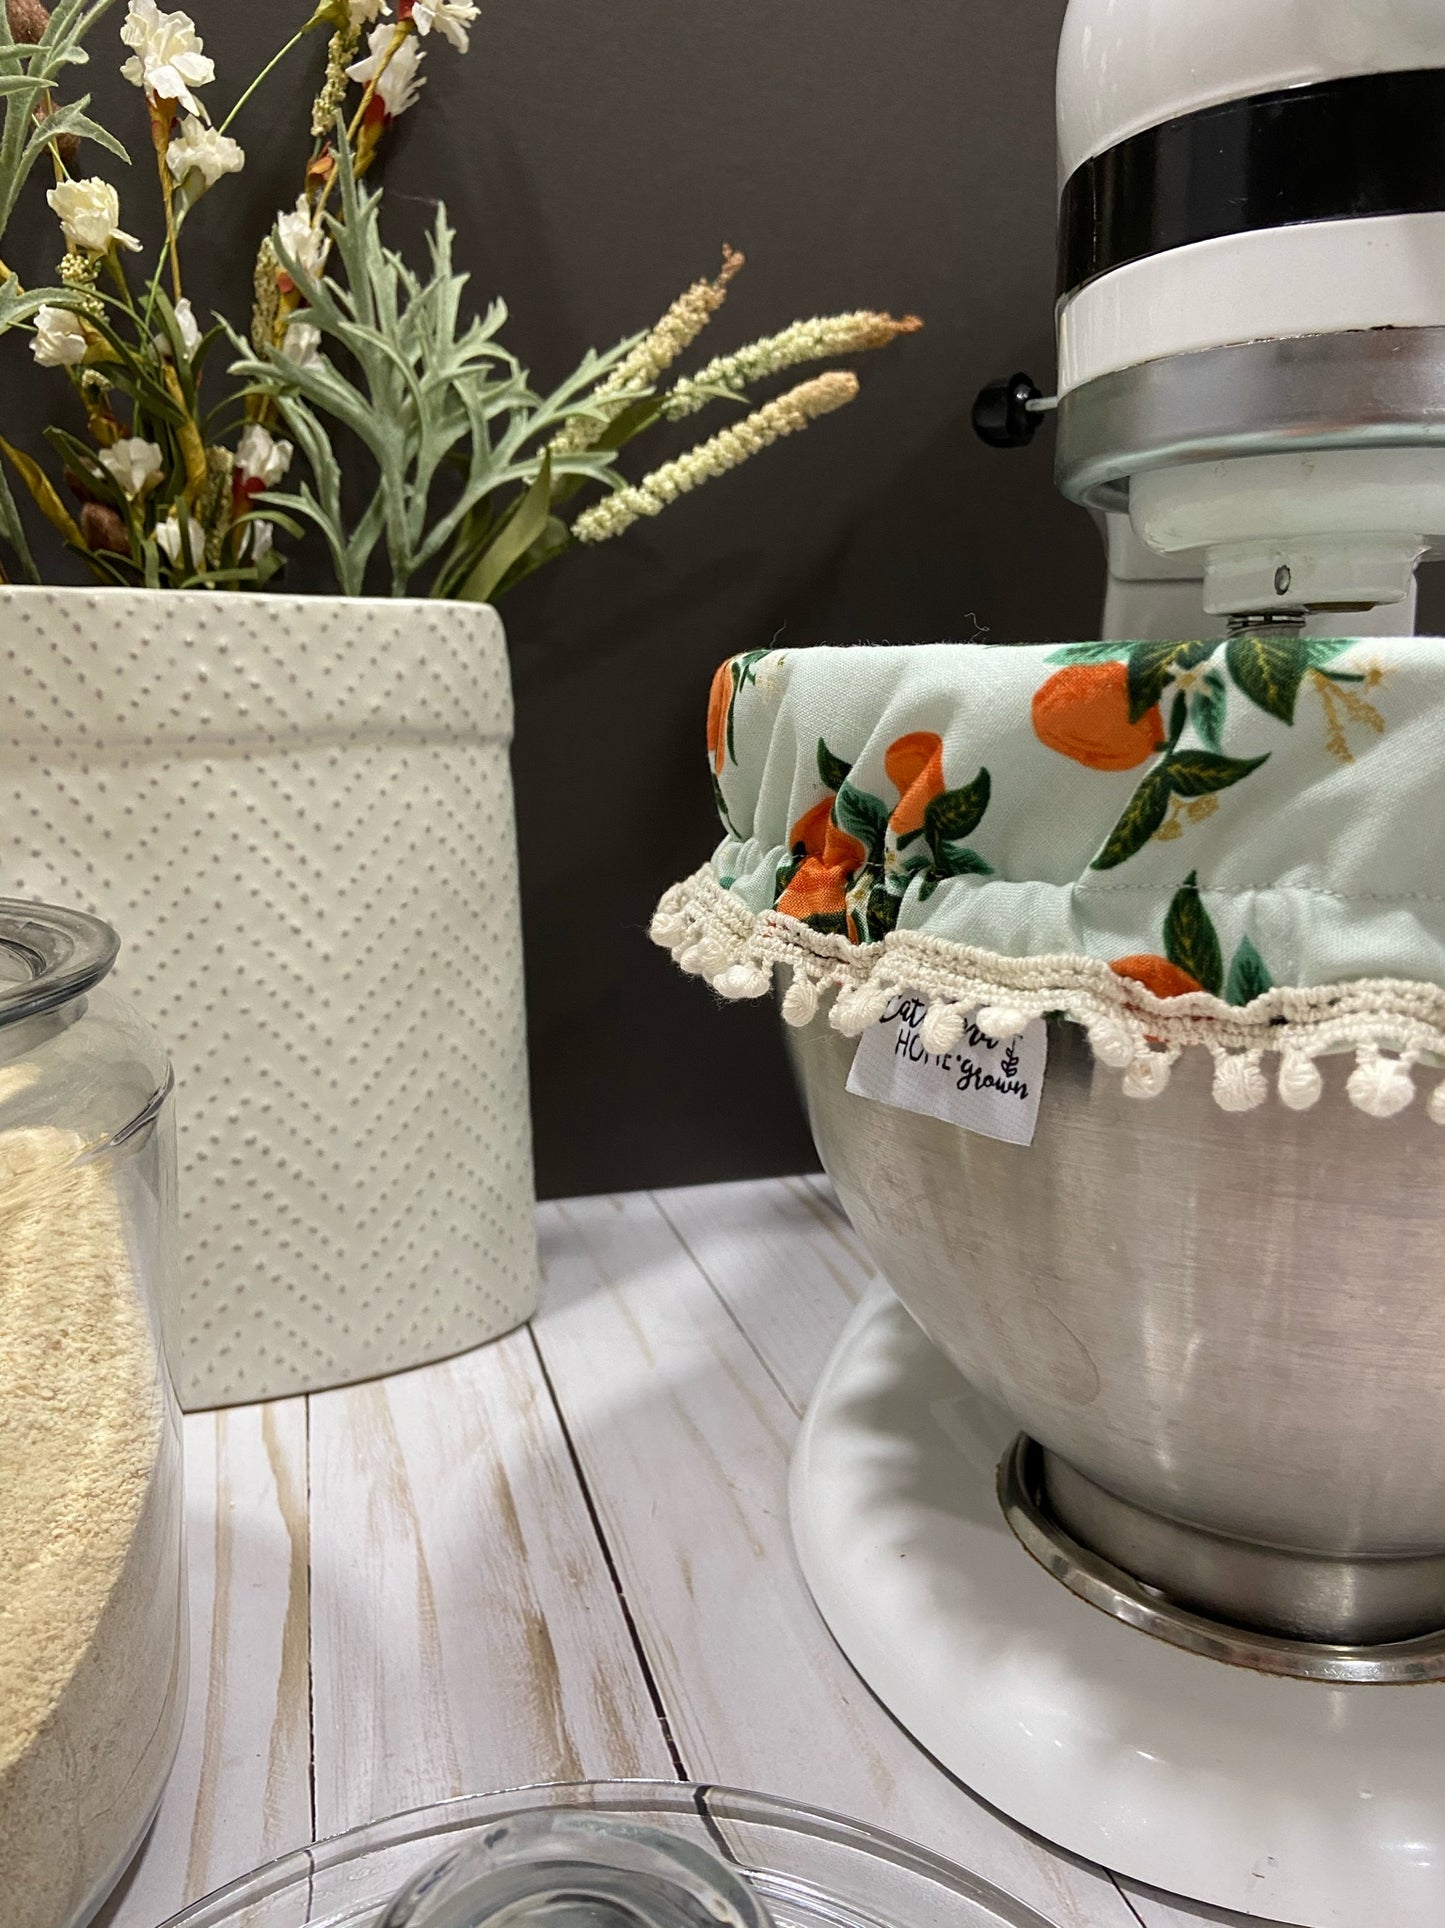 Kitchen Stand mixer bowl cover (Primavera Citrus Blossom Orange fabric)